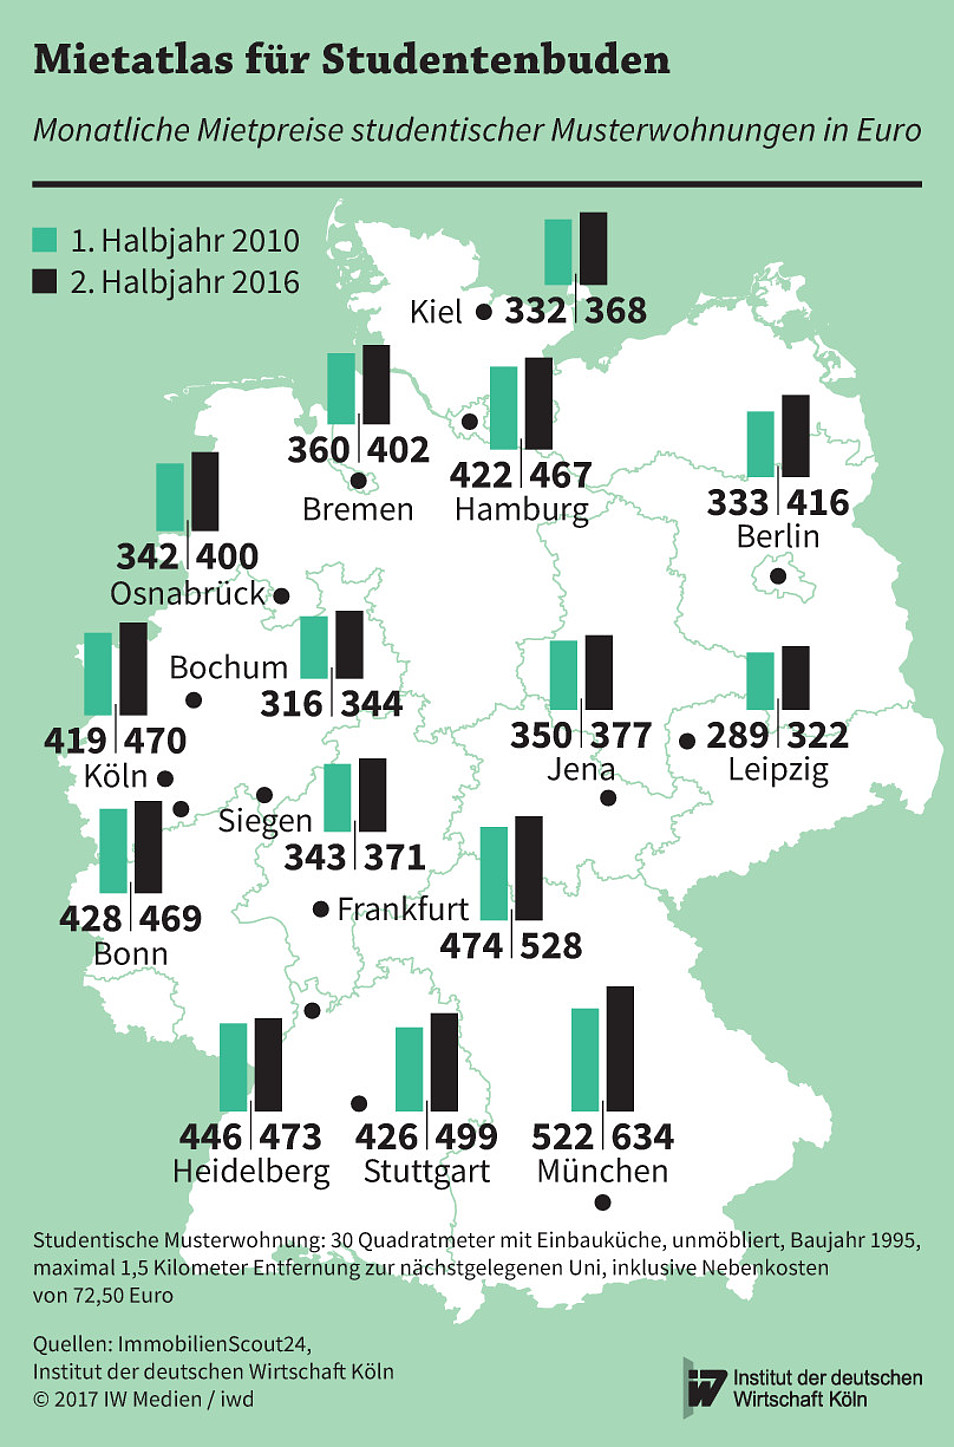 Monatlliche Mietpreise für Studentenwohnungen in Euro im Jahr 2010 und 2016